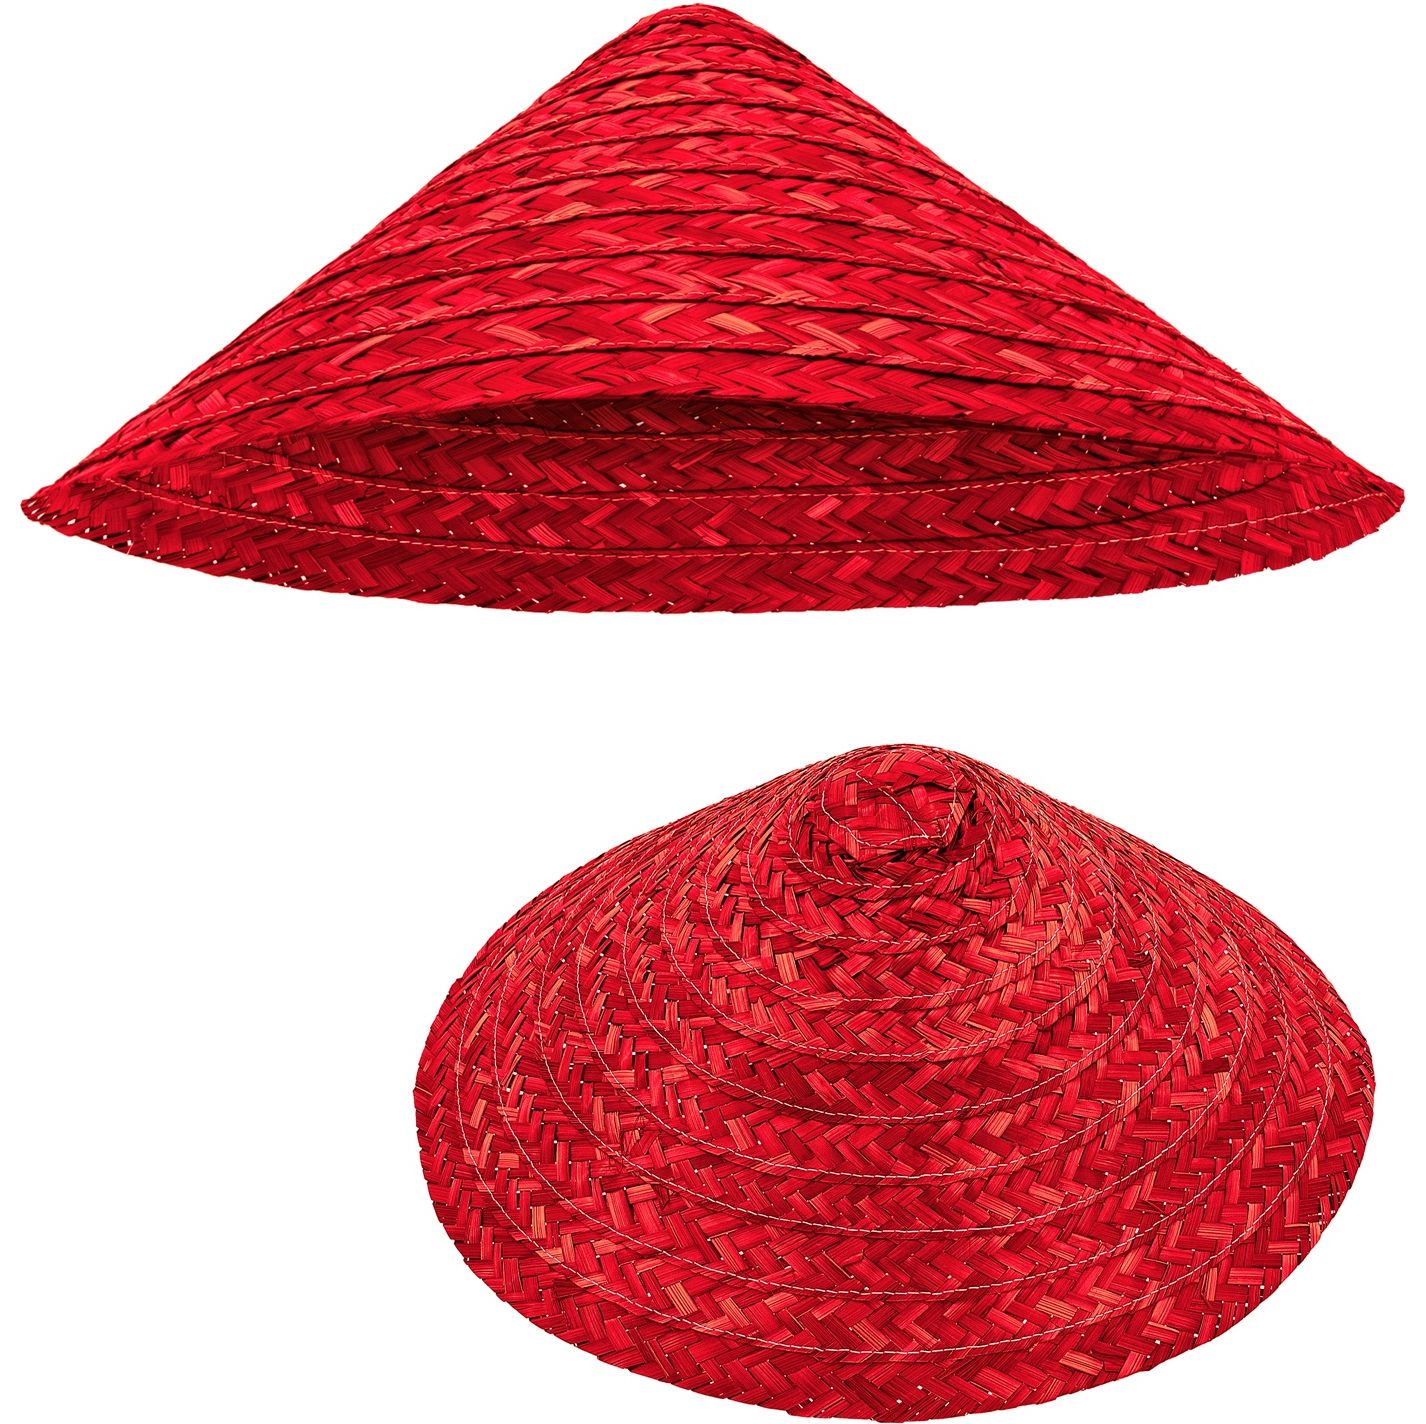 Rode vietkong hoed